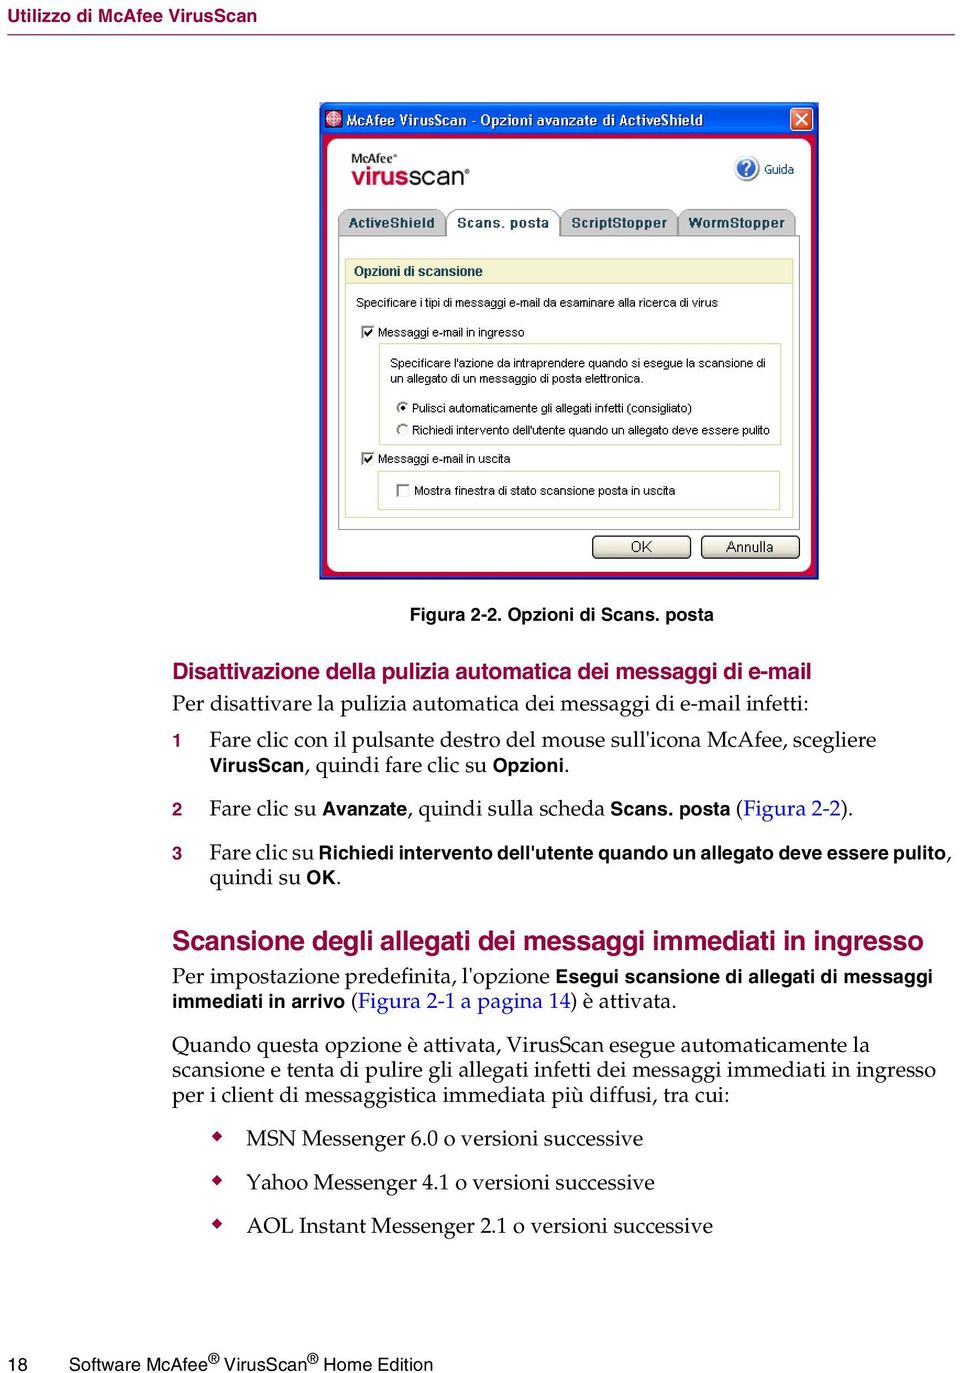 McAfee, scegliere VirusScan, quindi fare clic su Opzioni. 2 Fare clic su Avanzate, quindi sulla scheda Scans. posta (Figura 2-2).